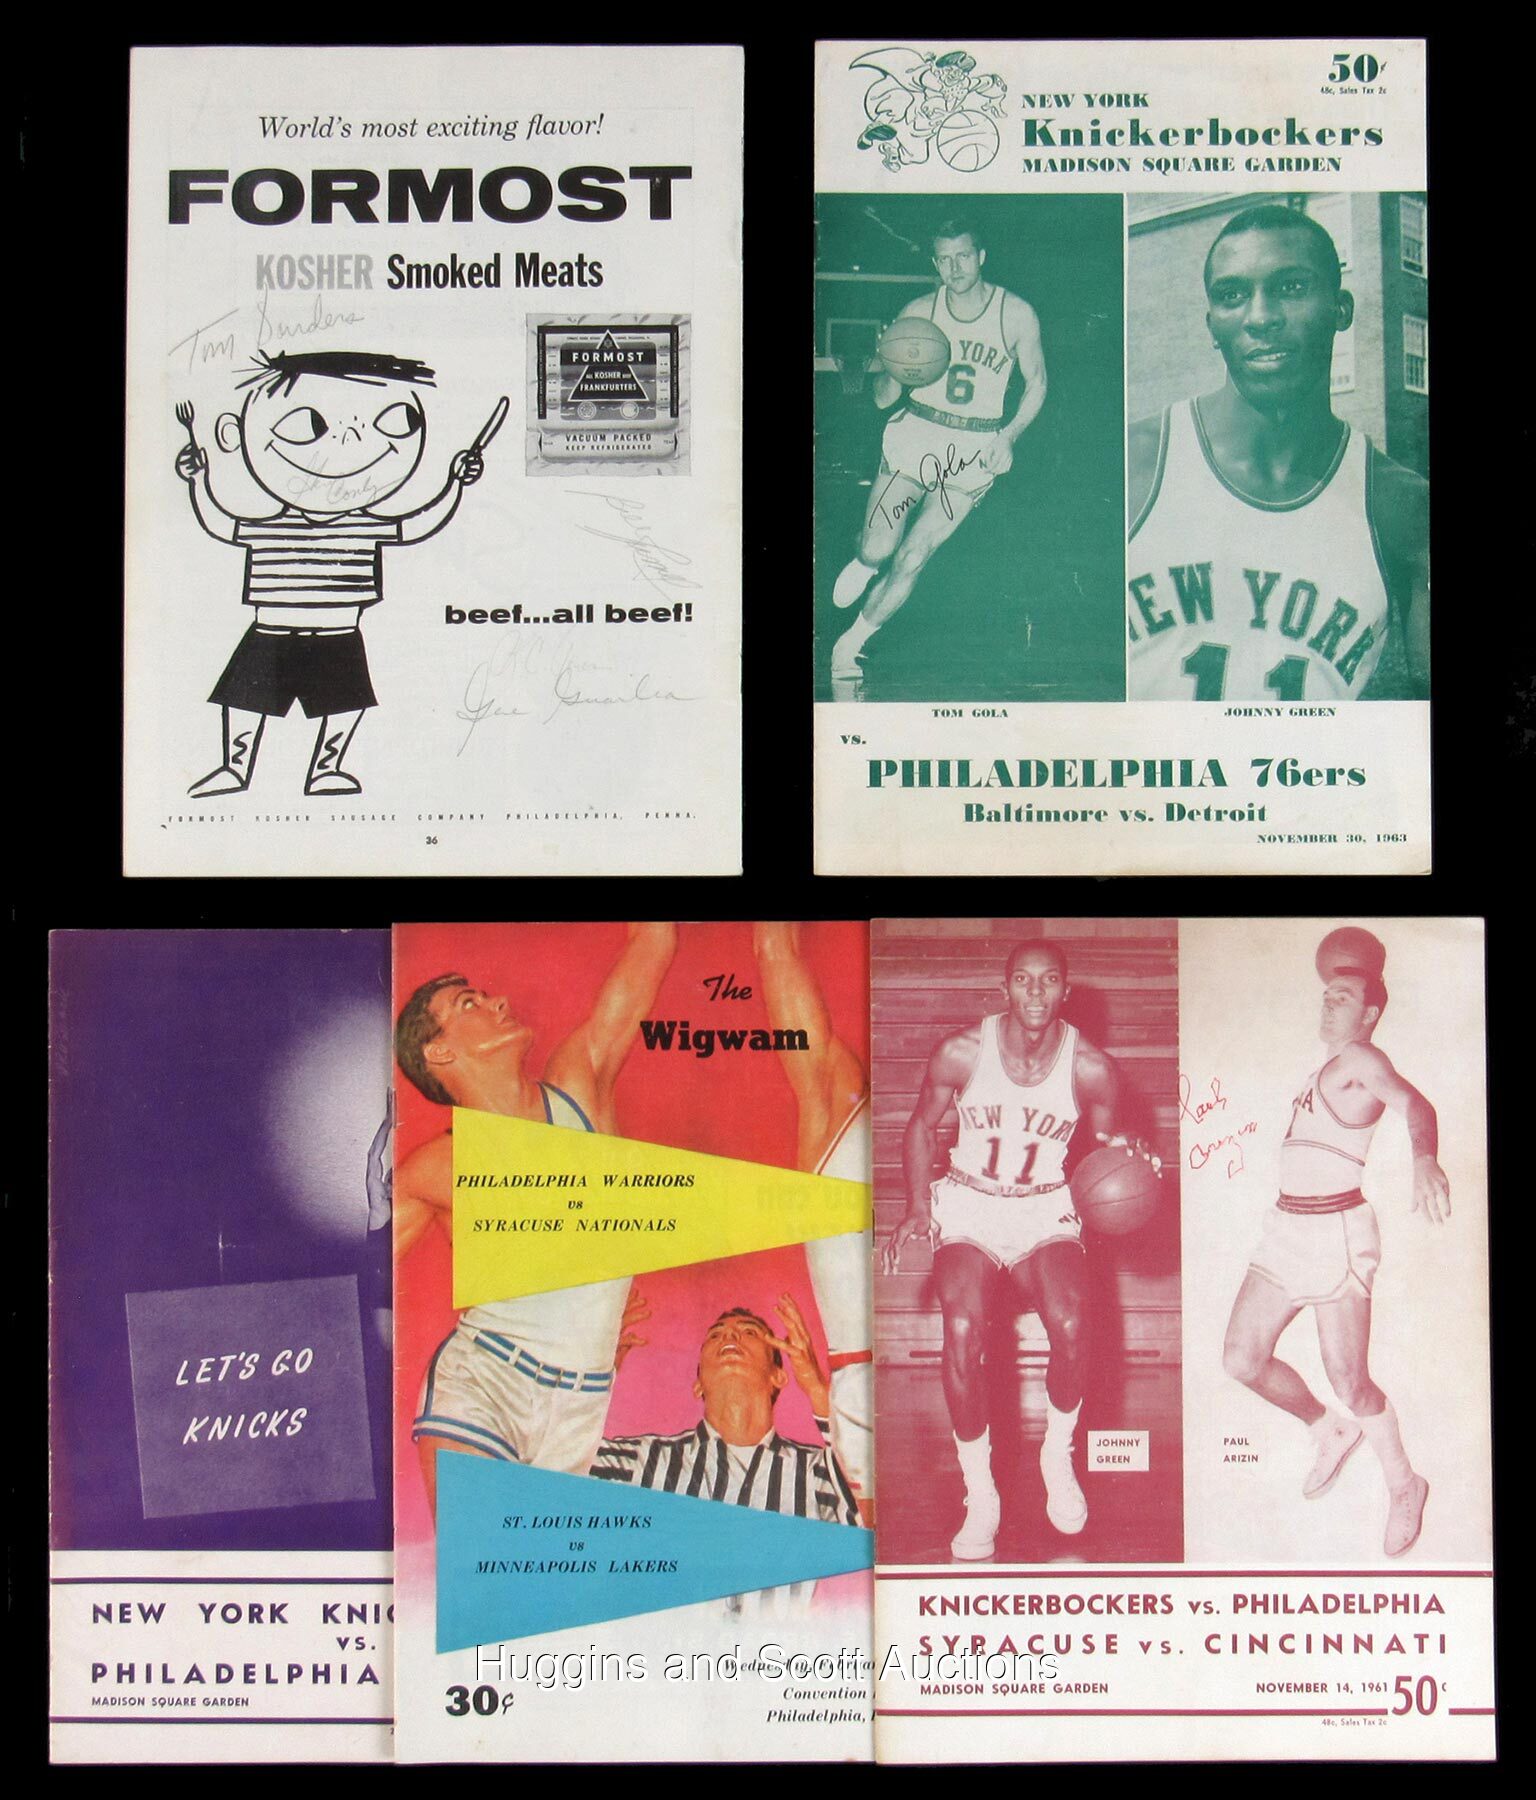 NBA Program: St. Louis Hawks (1967-68)